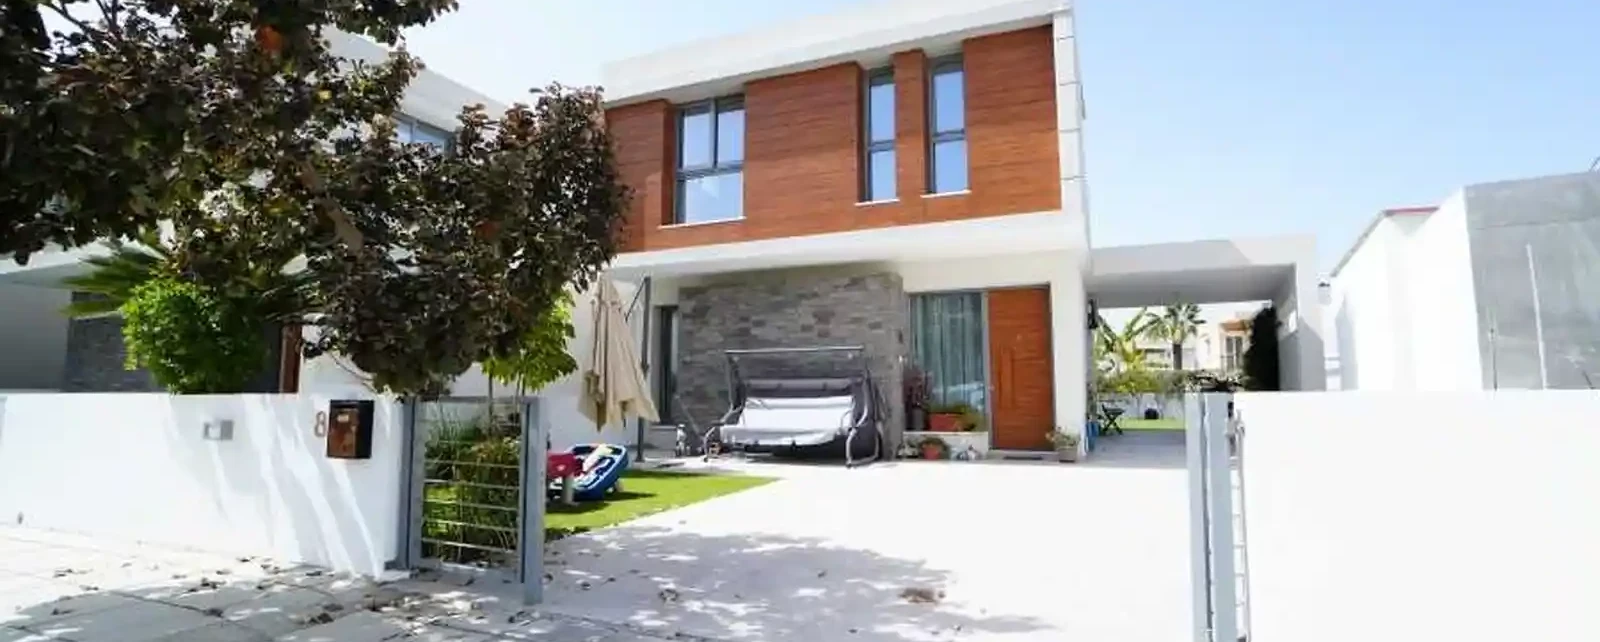 4-bedroom detached house fоr sаle €500.000, image 1